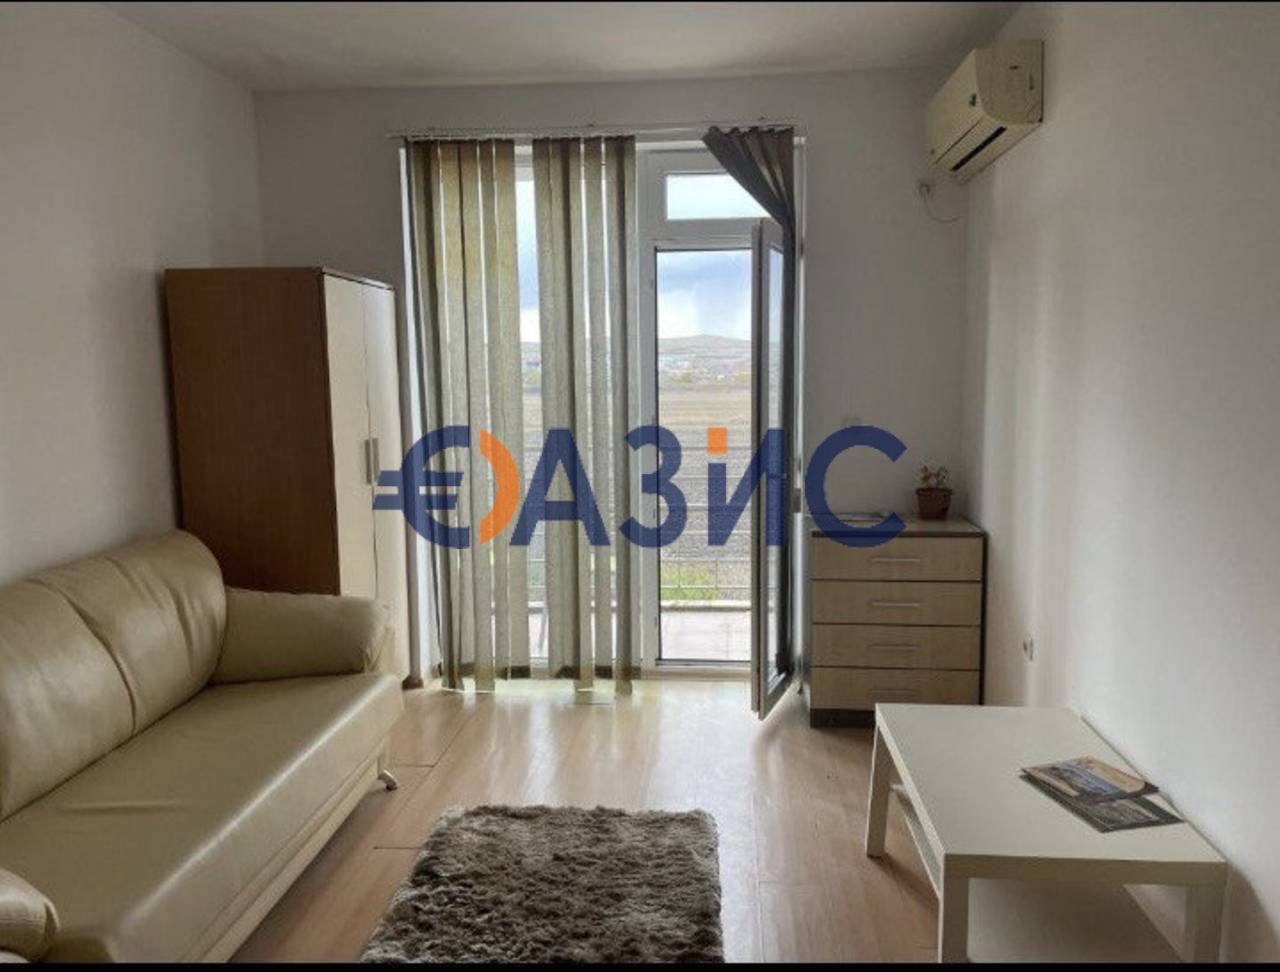 Apartment at Sunny Beach, Bulgaria, 31 sq.m - picture 1